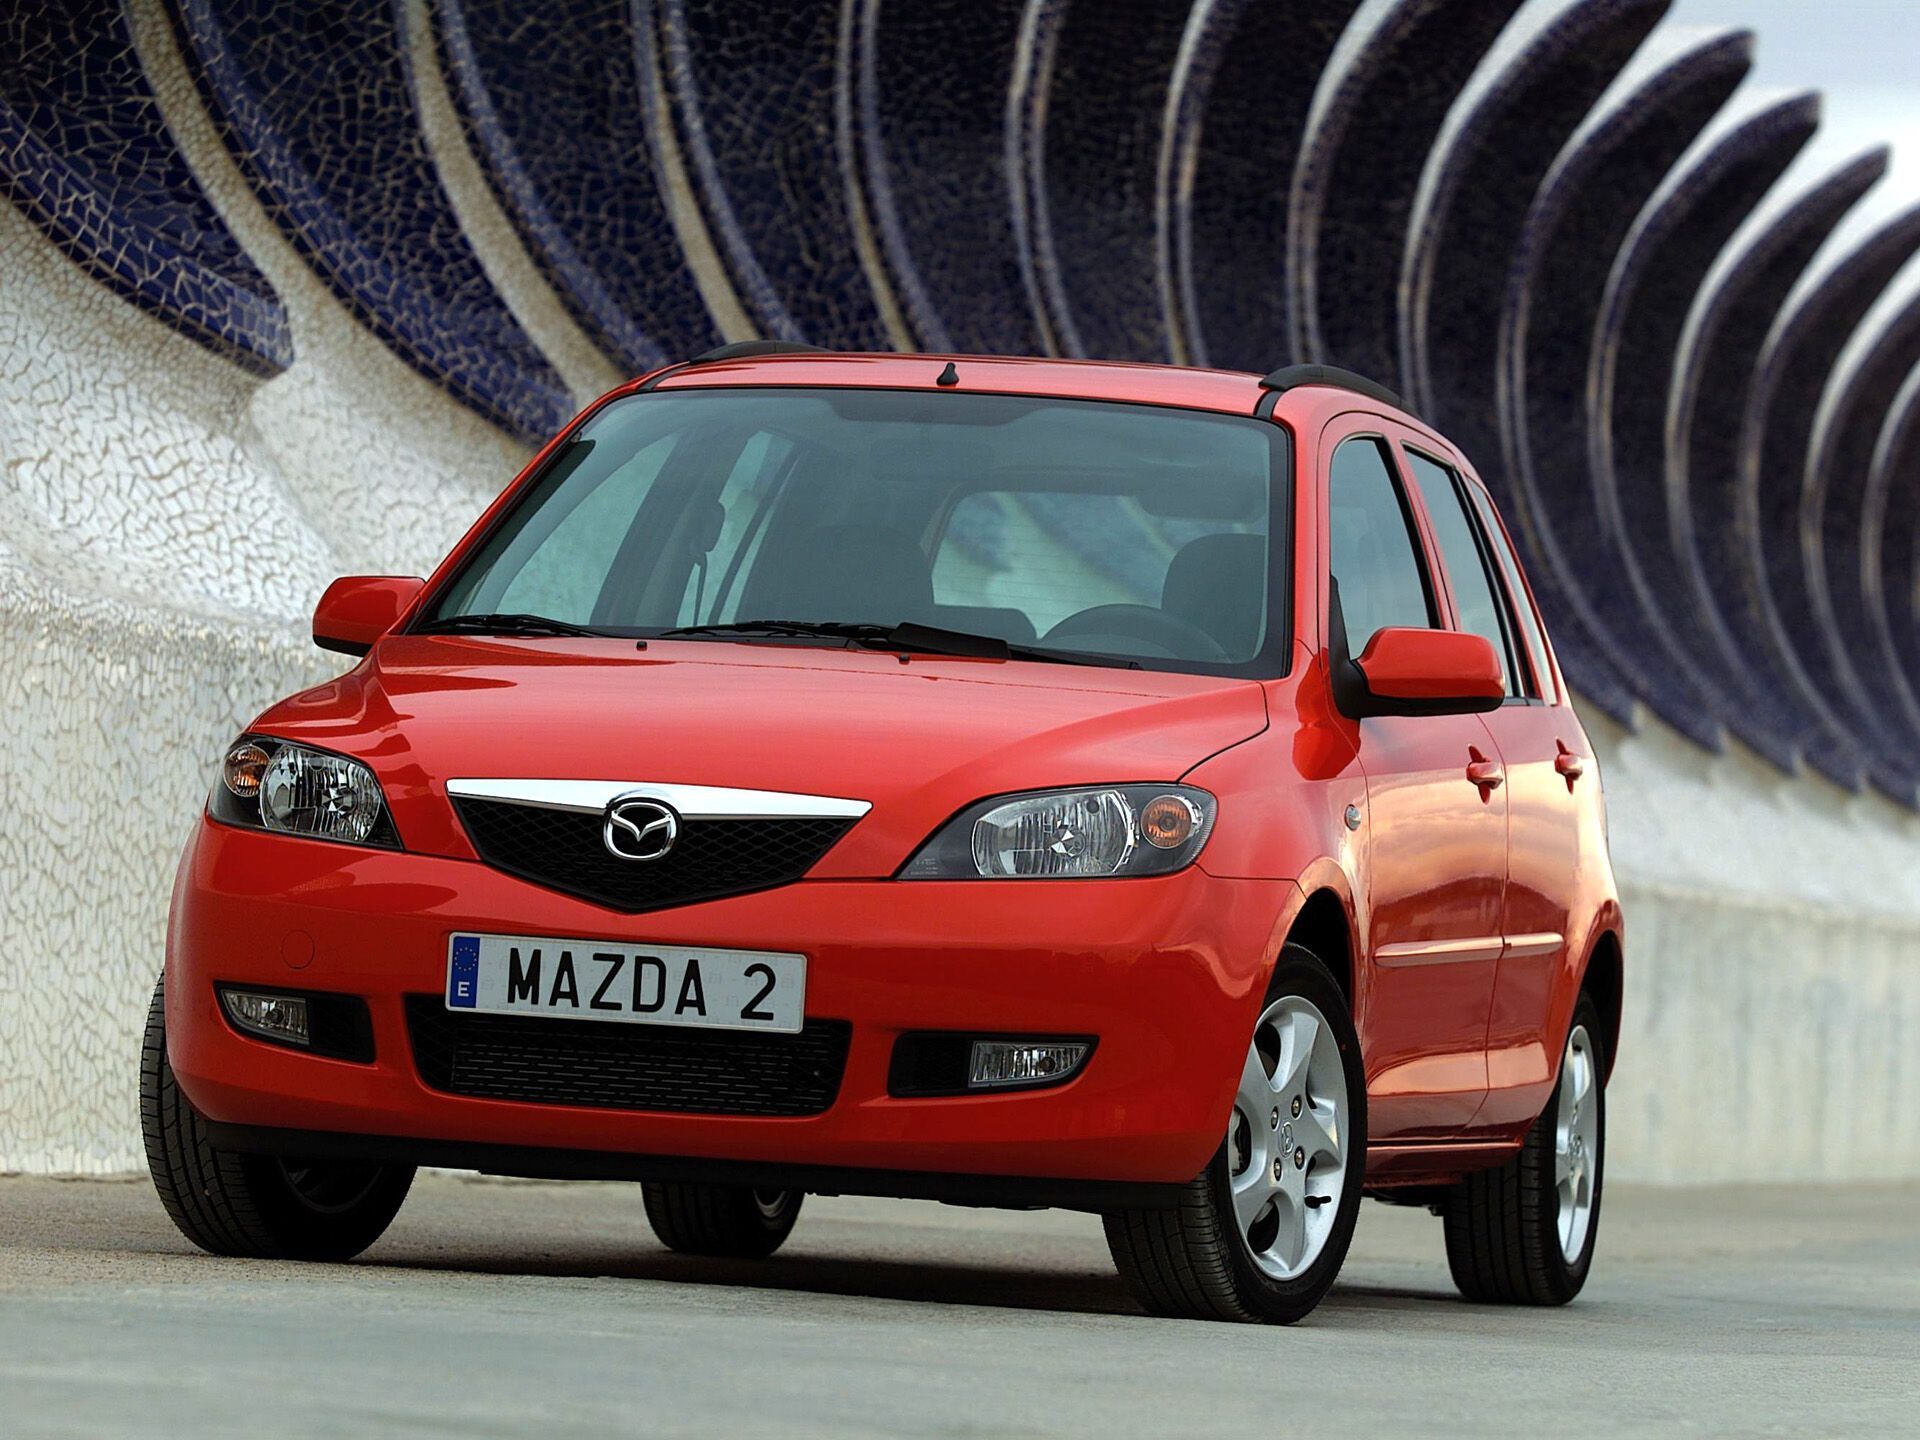 Mazda2 – один из примеров недорогого автомобиля, который отличается высокой надежностью